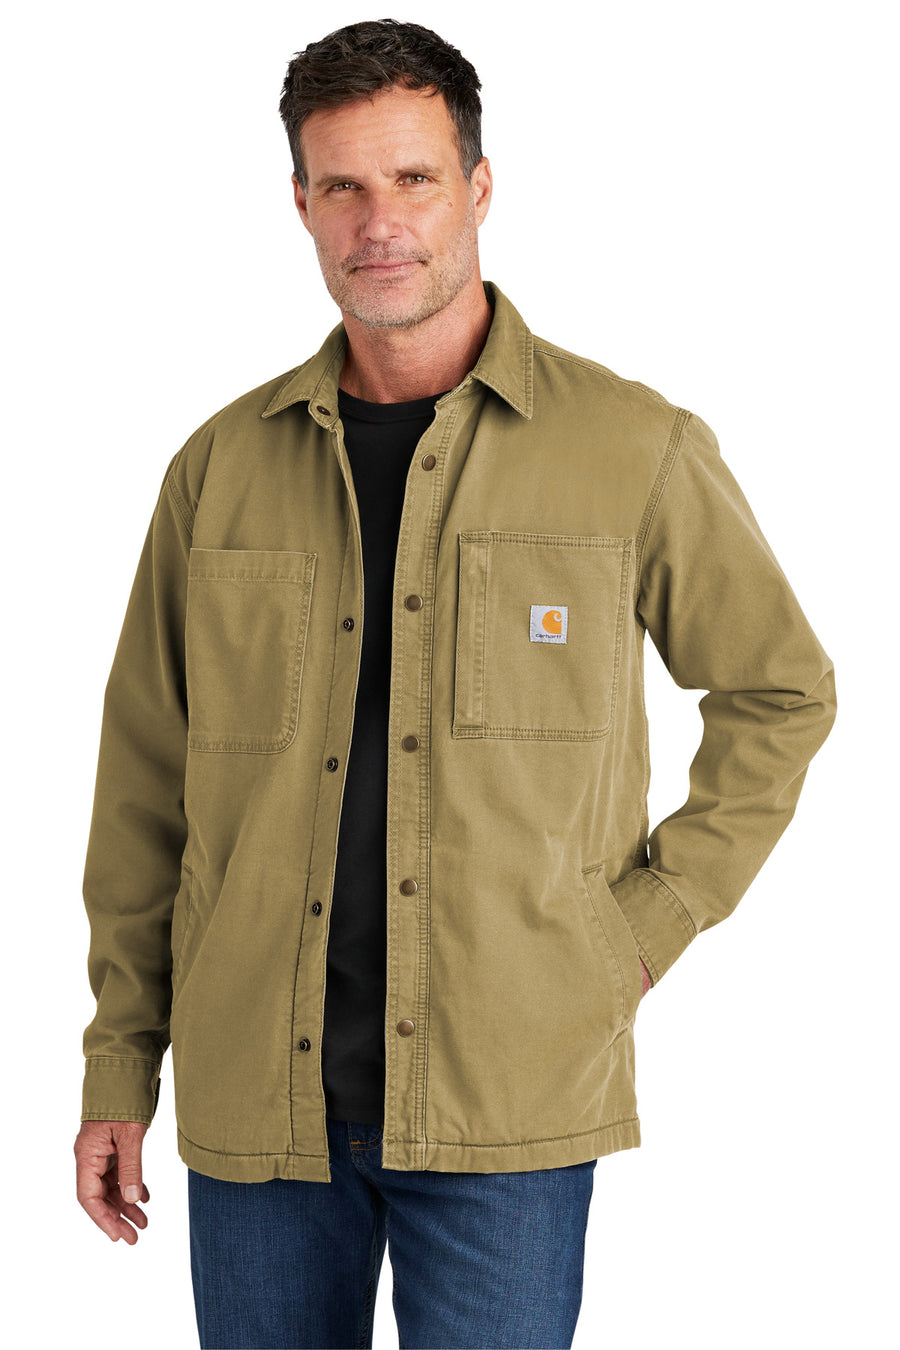 Carhartt Rugged Flex Fleece-Lined Shirt Jac